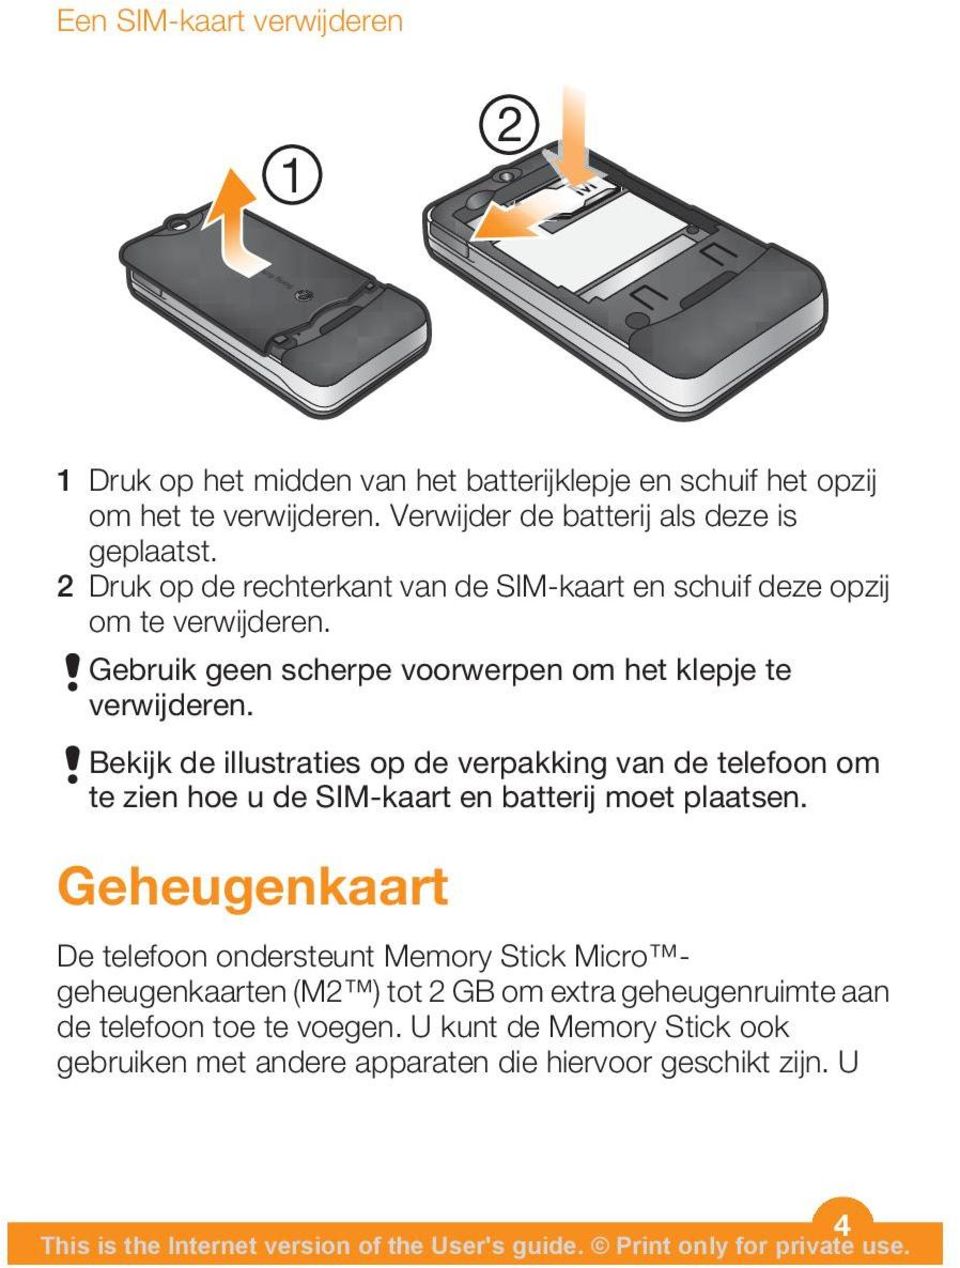 Bekijk de illustraties op de verpakking van de telefoon om te zien hoe u de SIM-kaart en batterij moet plaatsen.